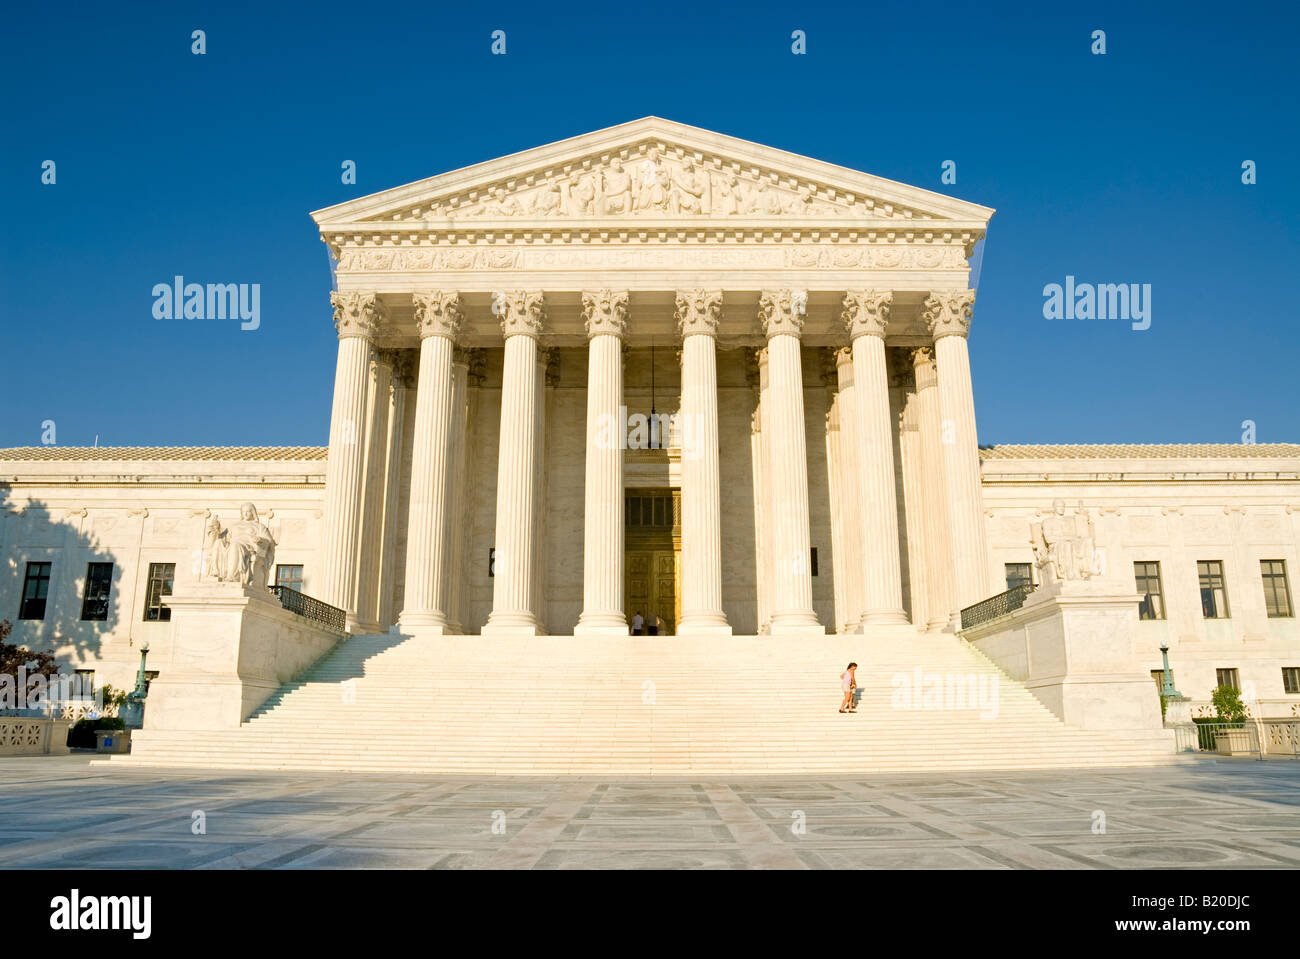 WASHINGTON DC, USA - auf der Vorderseite des Gebäudes, nach Westen, der Oberste Gerichtshof der USA auf dem Capitol Hill in Washington DC. Stockfoto